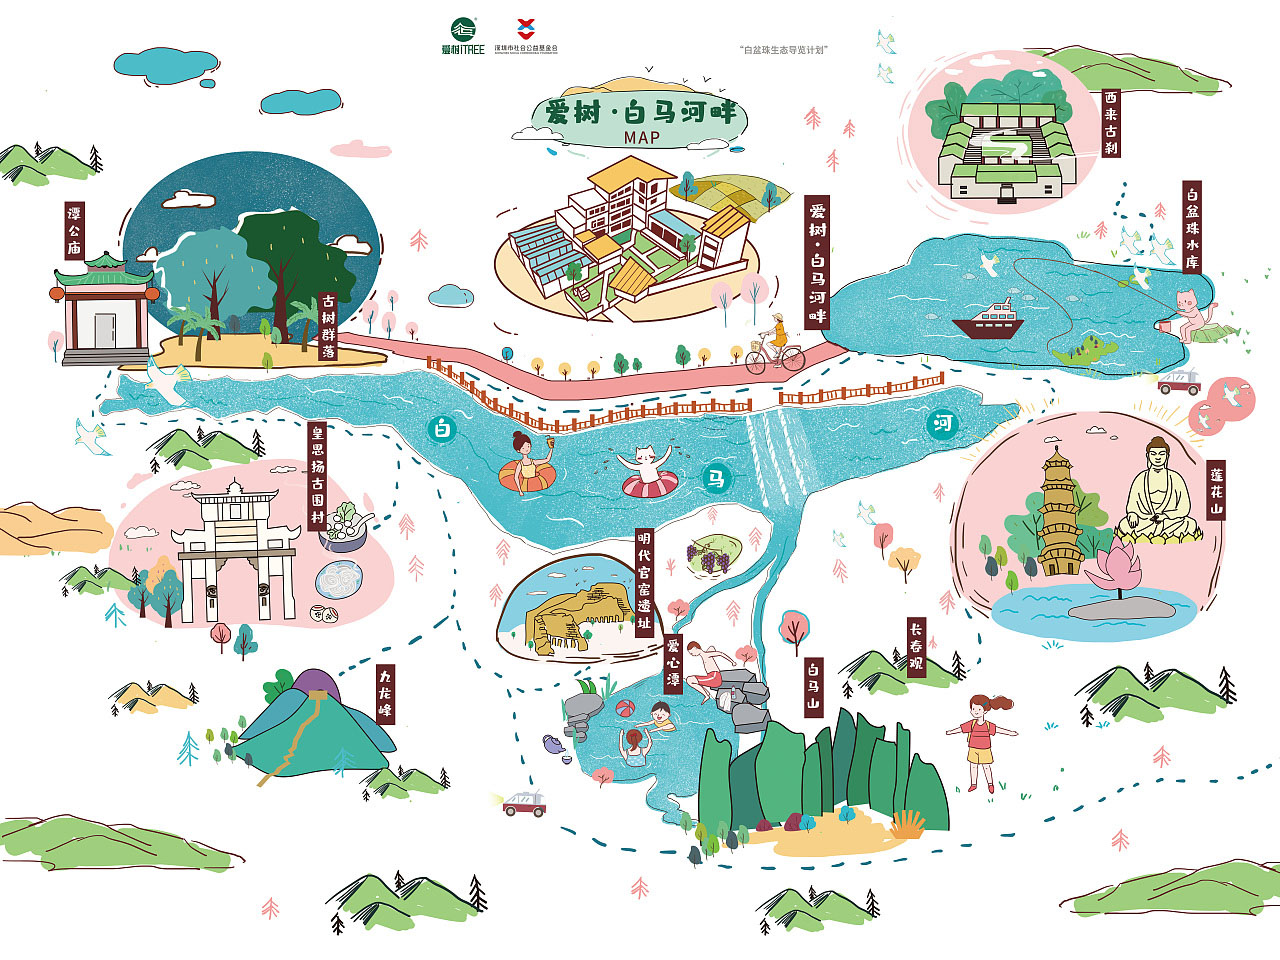 广州语音导览让景区游览更加智能